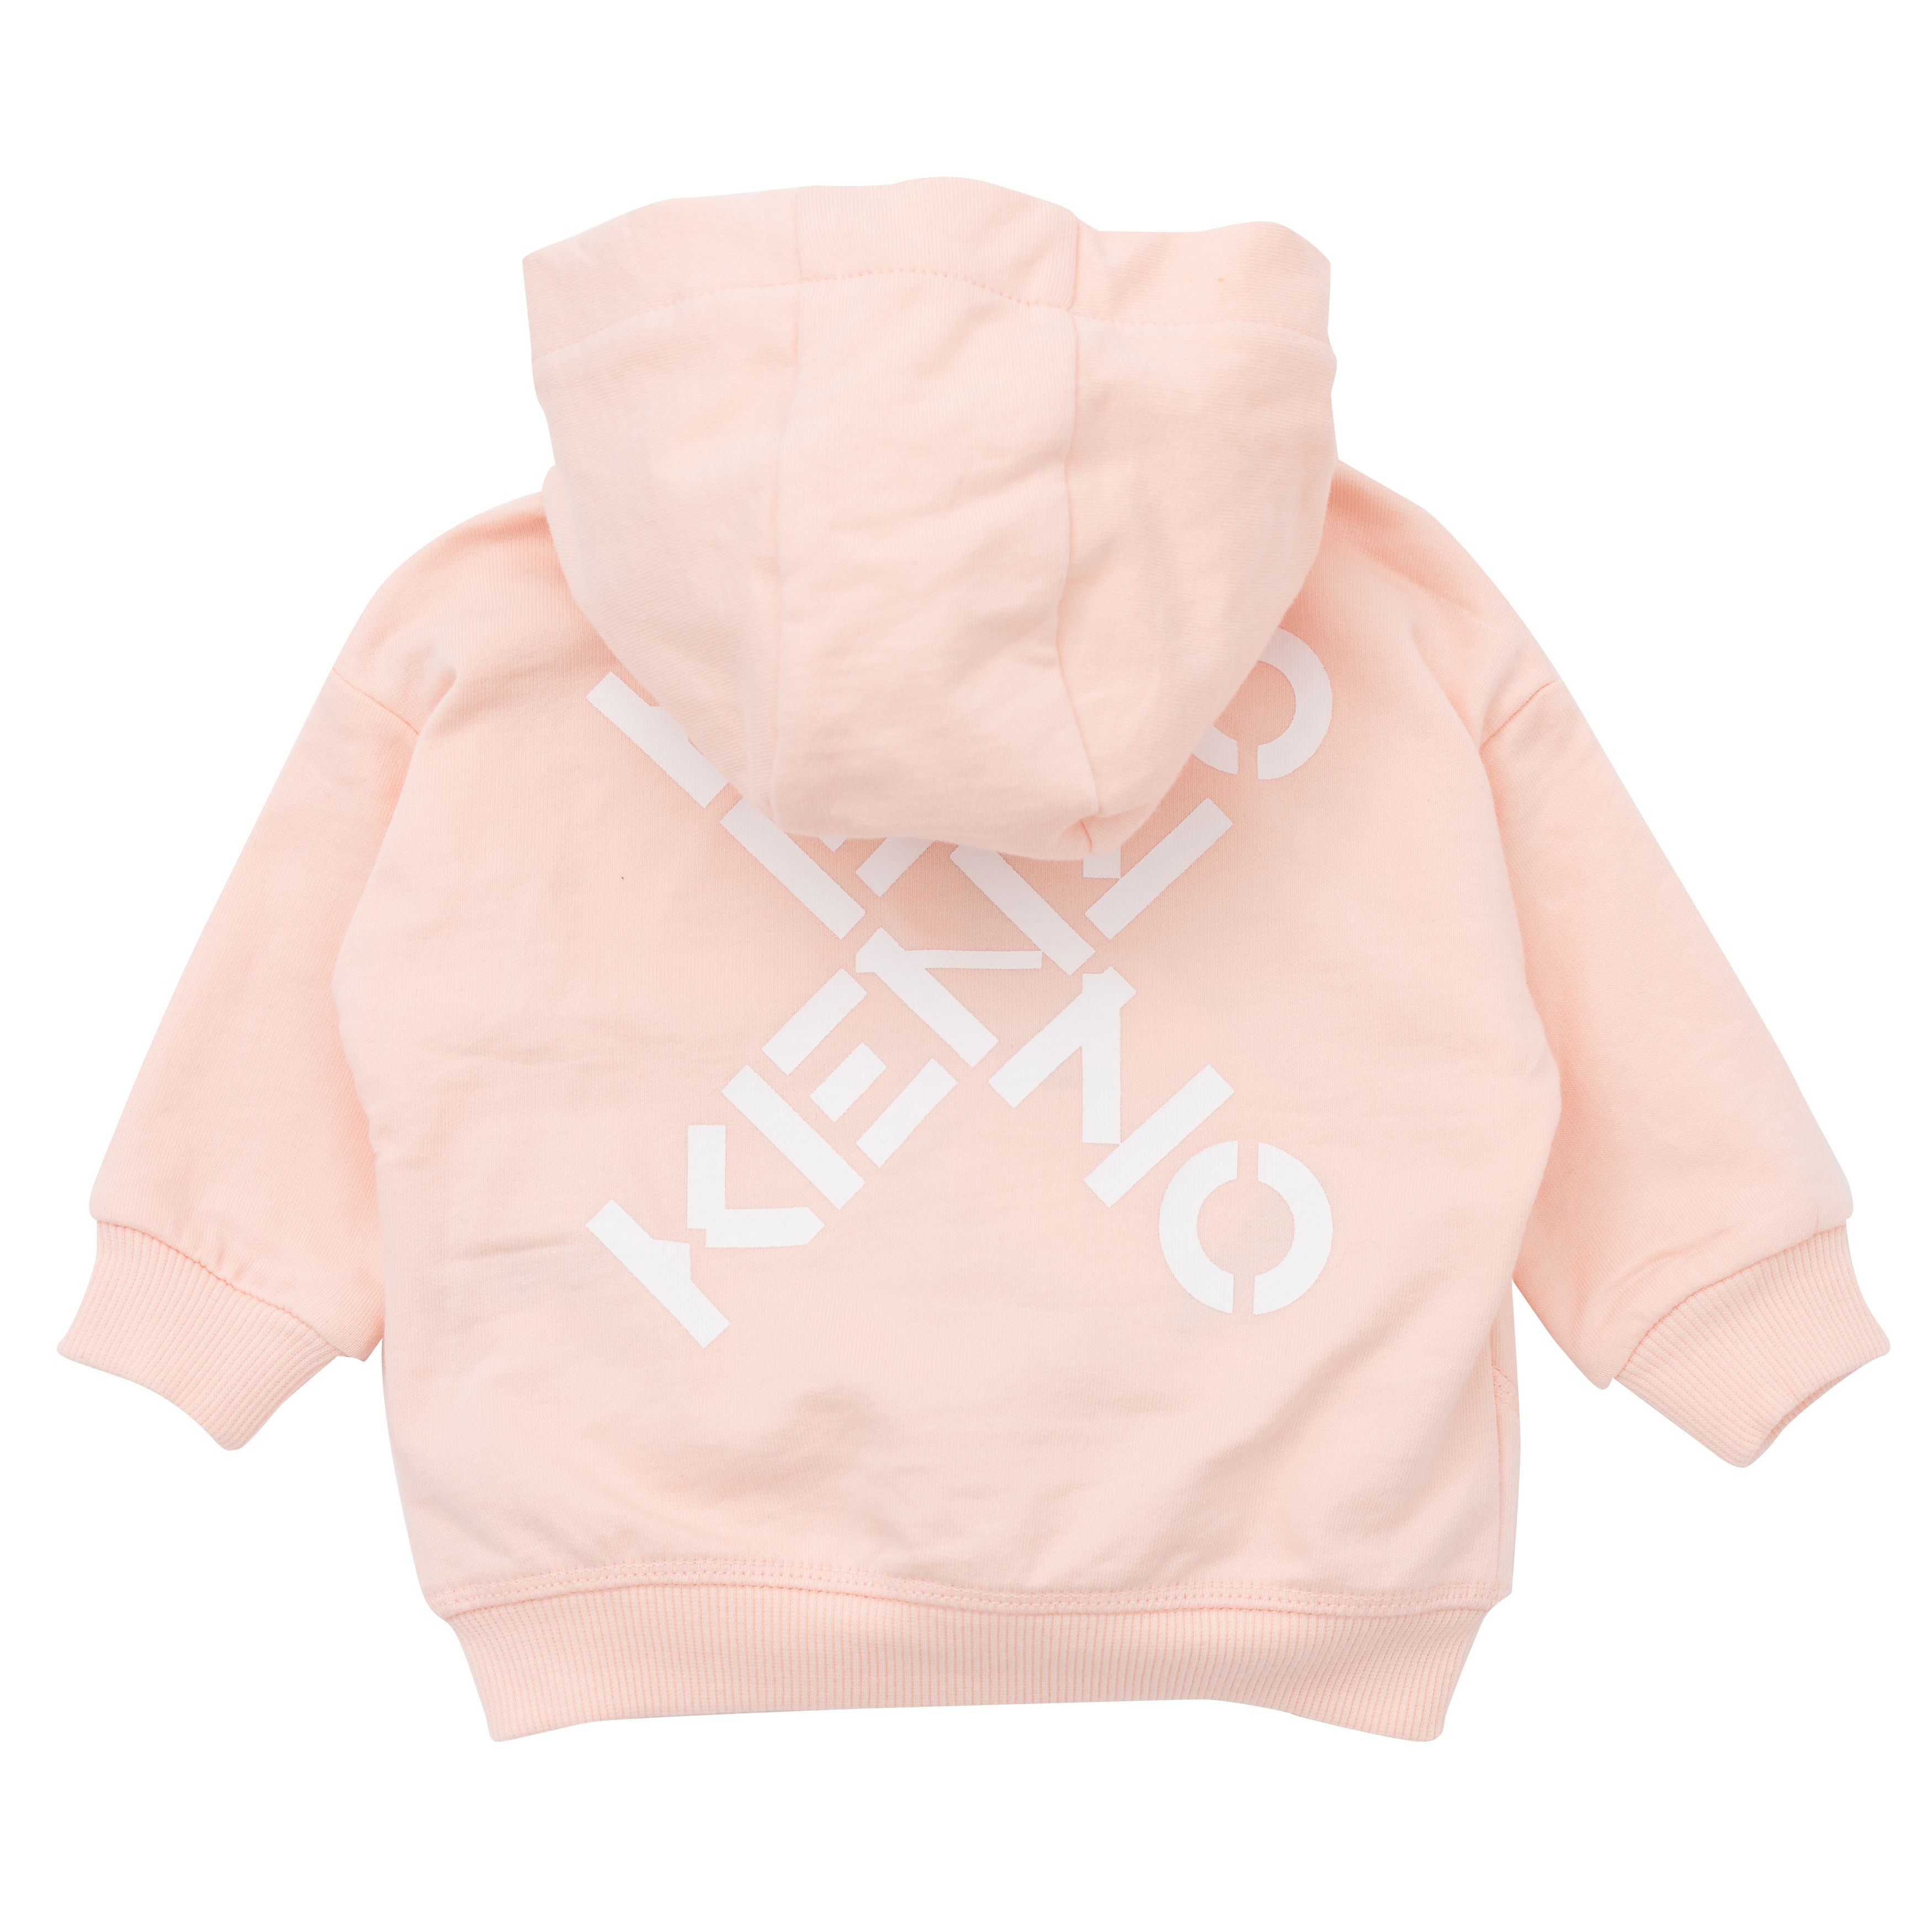 Zip-up hooded sweatshirt KENZO KIDS for GIRL